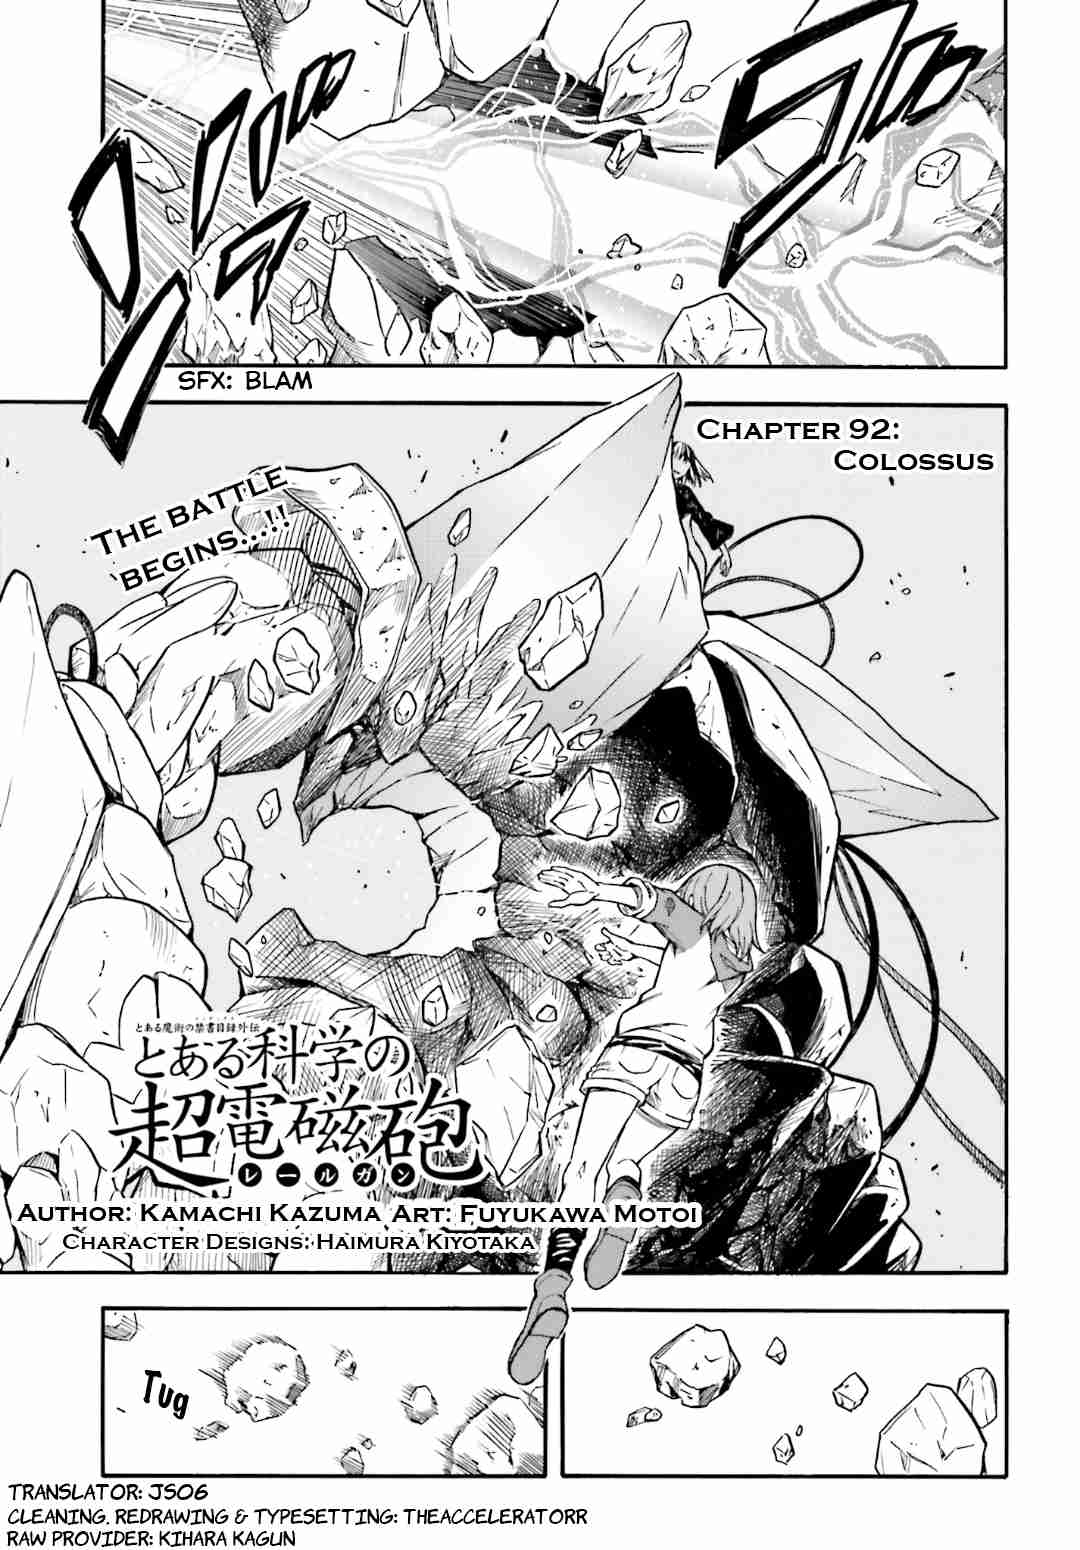 Toaru Kagaku no Choudenjihou Vol. 13 Ch. 92 Colossus